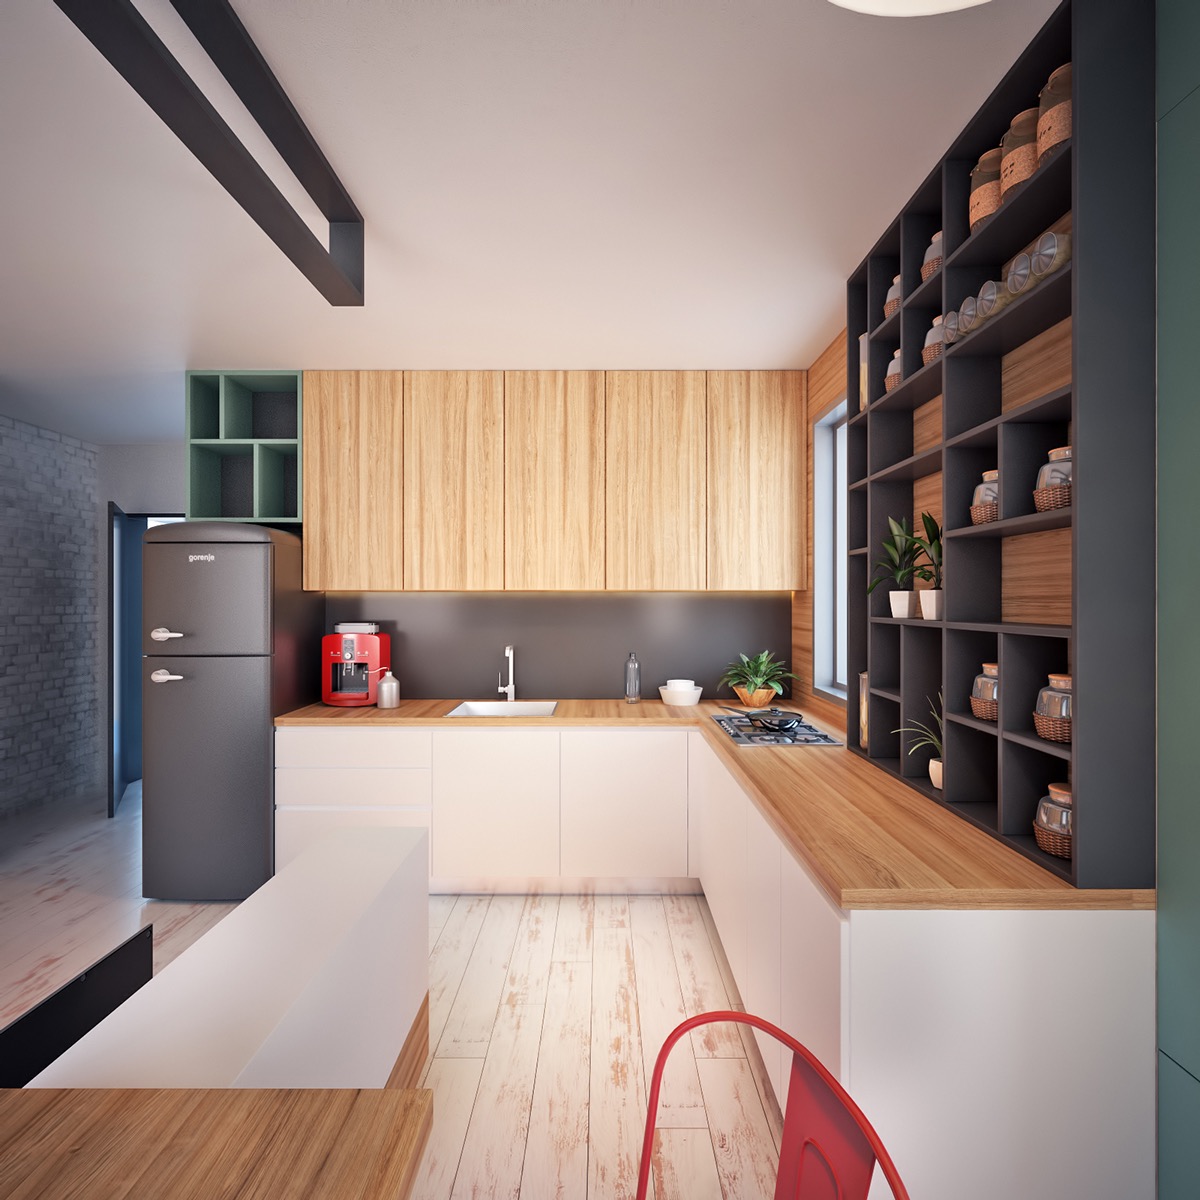 simple wooden kitchen design